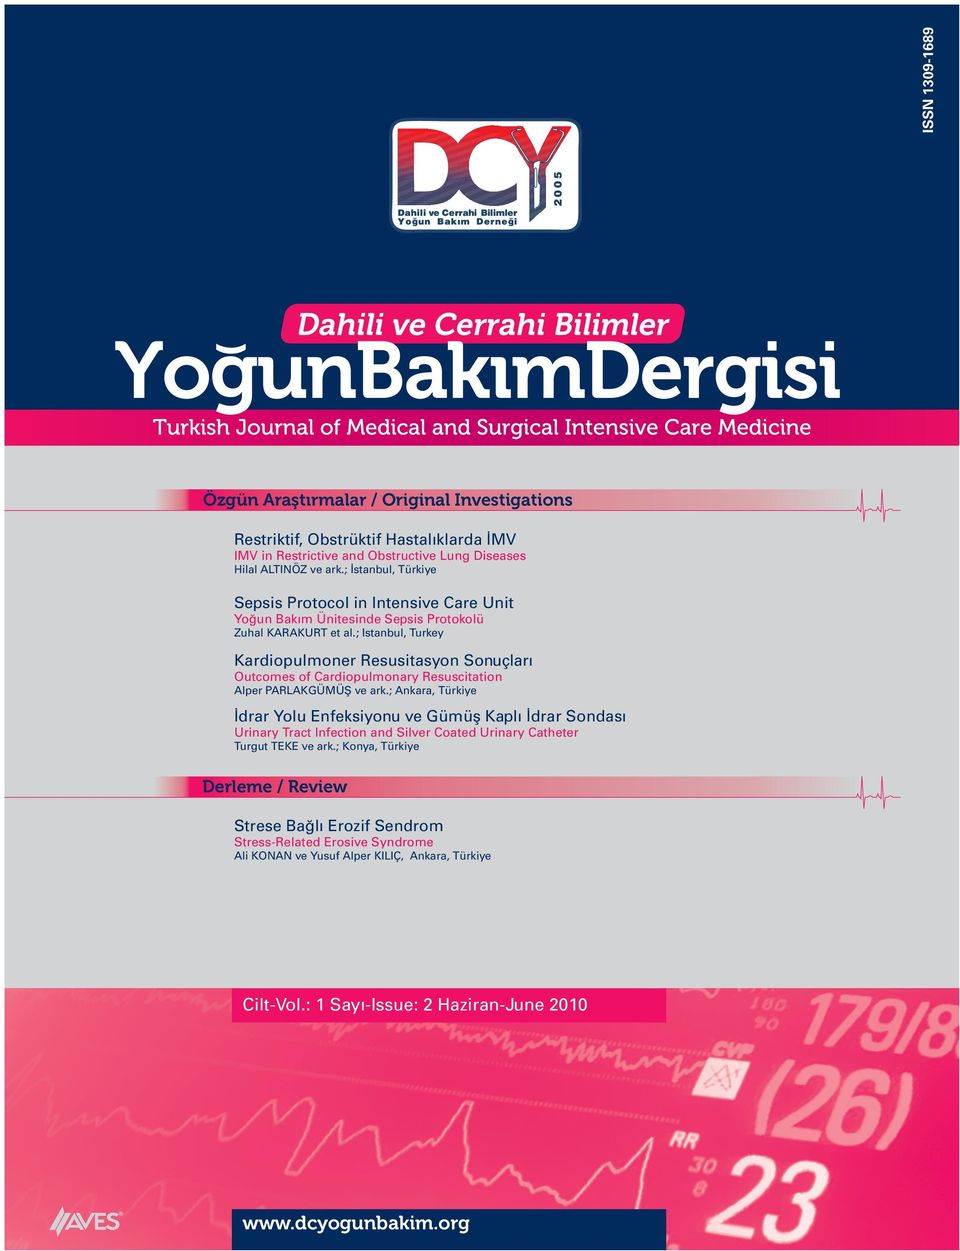 ; Istanbul, Turkey Kardiopulmoner Resusitasyon Sonuçları Outcomes of Cardiopulmonary Resuscitation Alper PARLAKGÜMÜŞ ve ark.